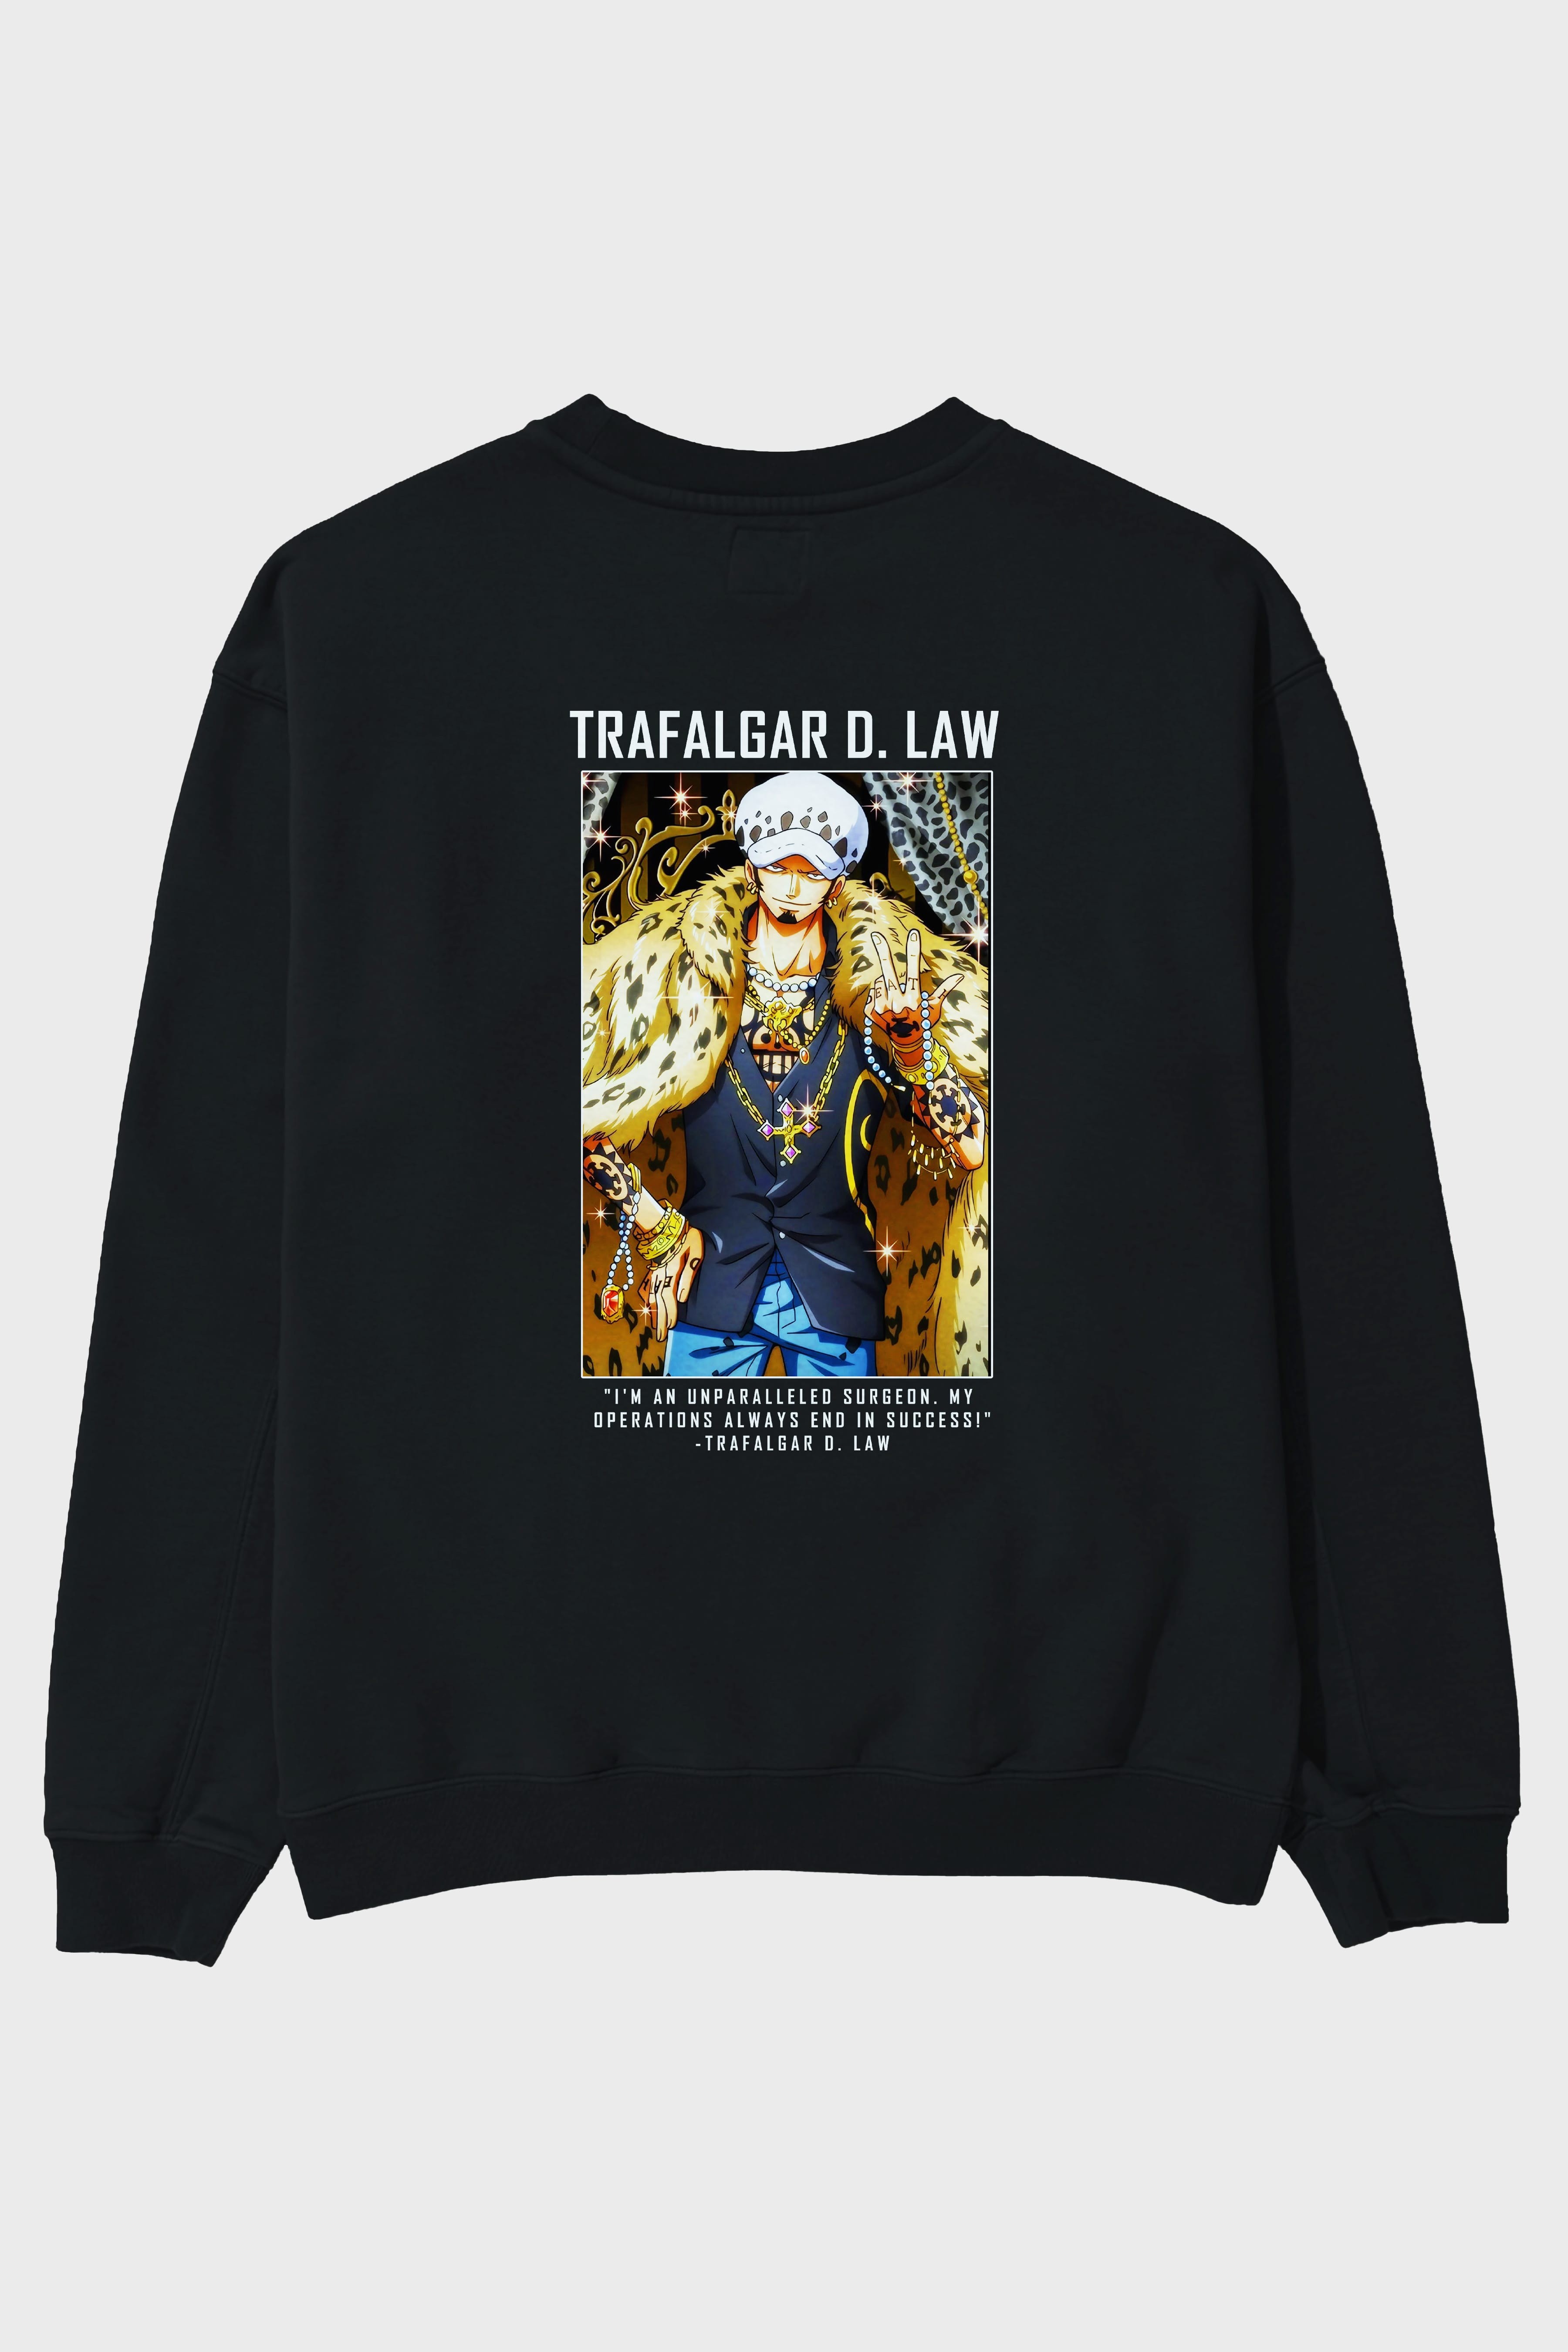 Trafalgar D. Water Law 2 Arka Baskılı Anime Oversize Sweatshirt Erkek Kadın Unisex